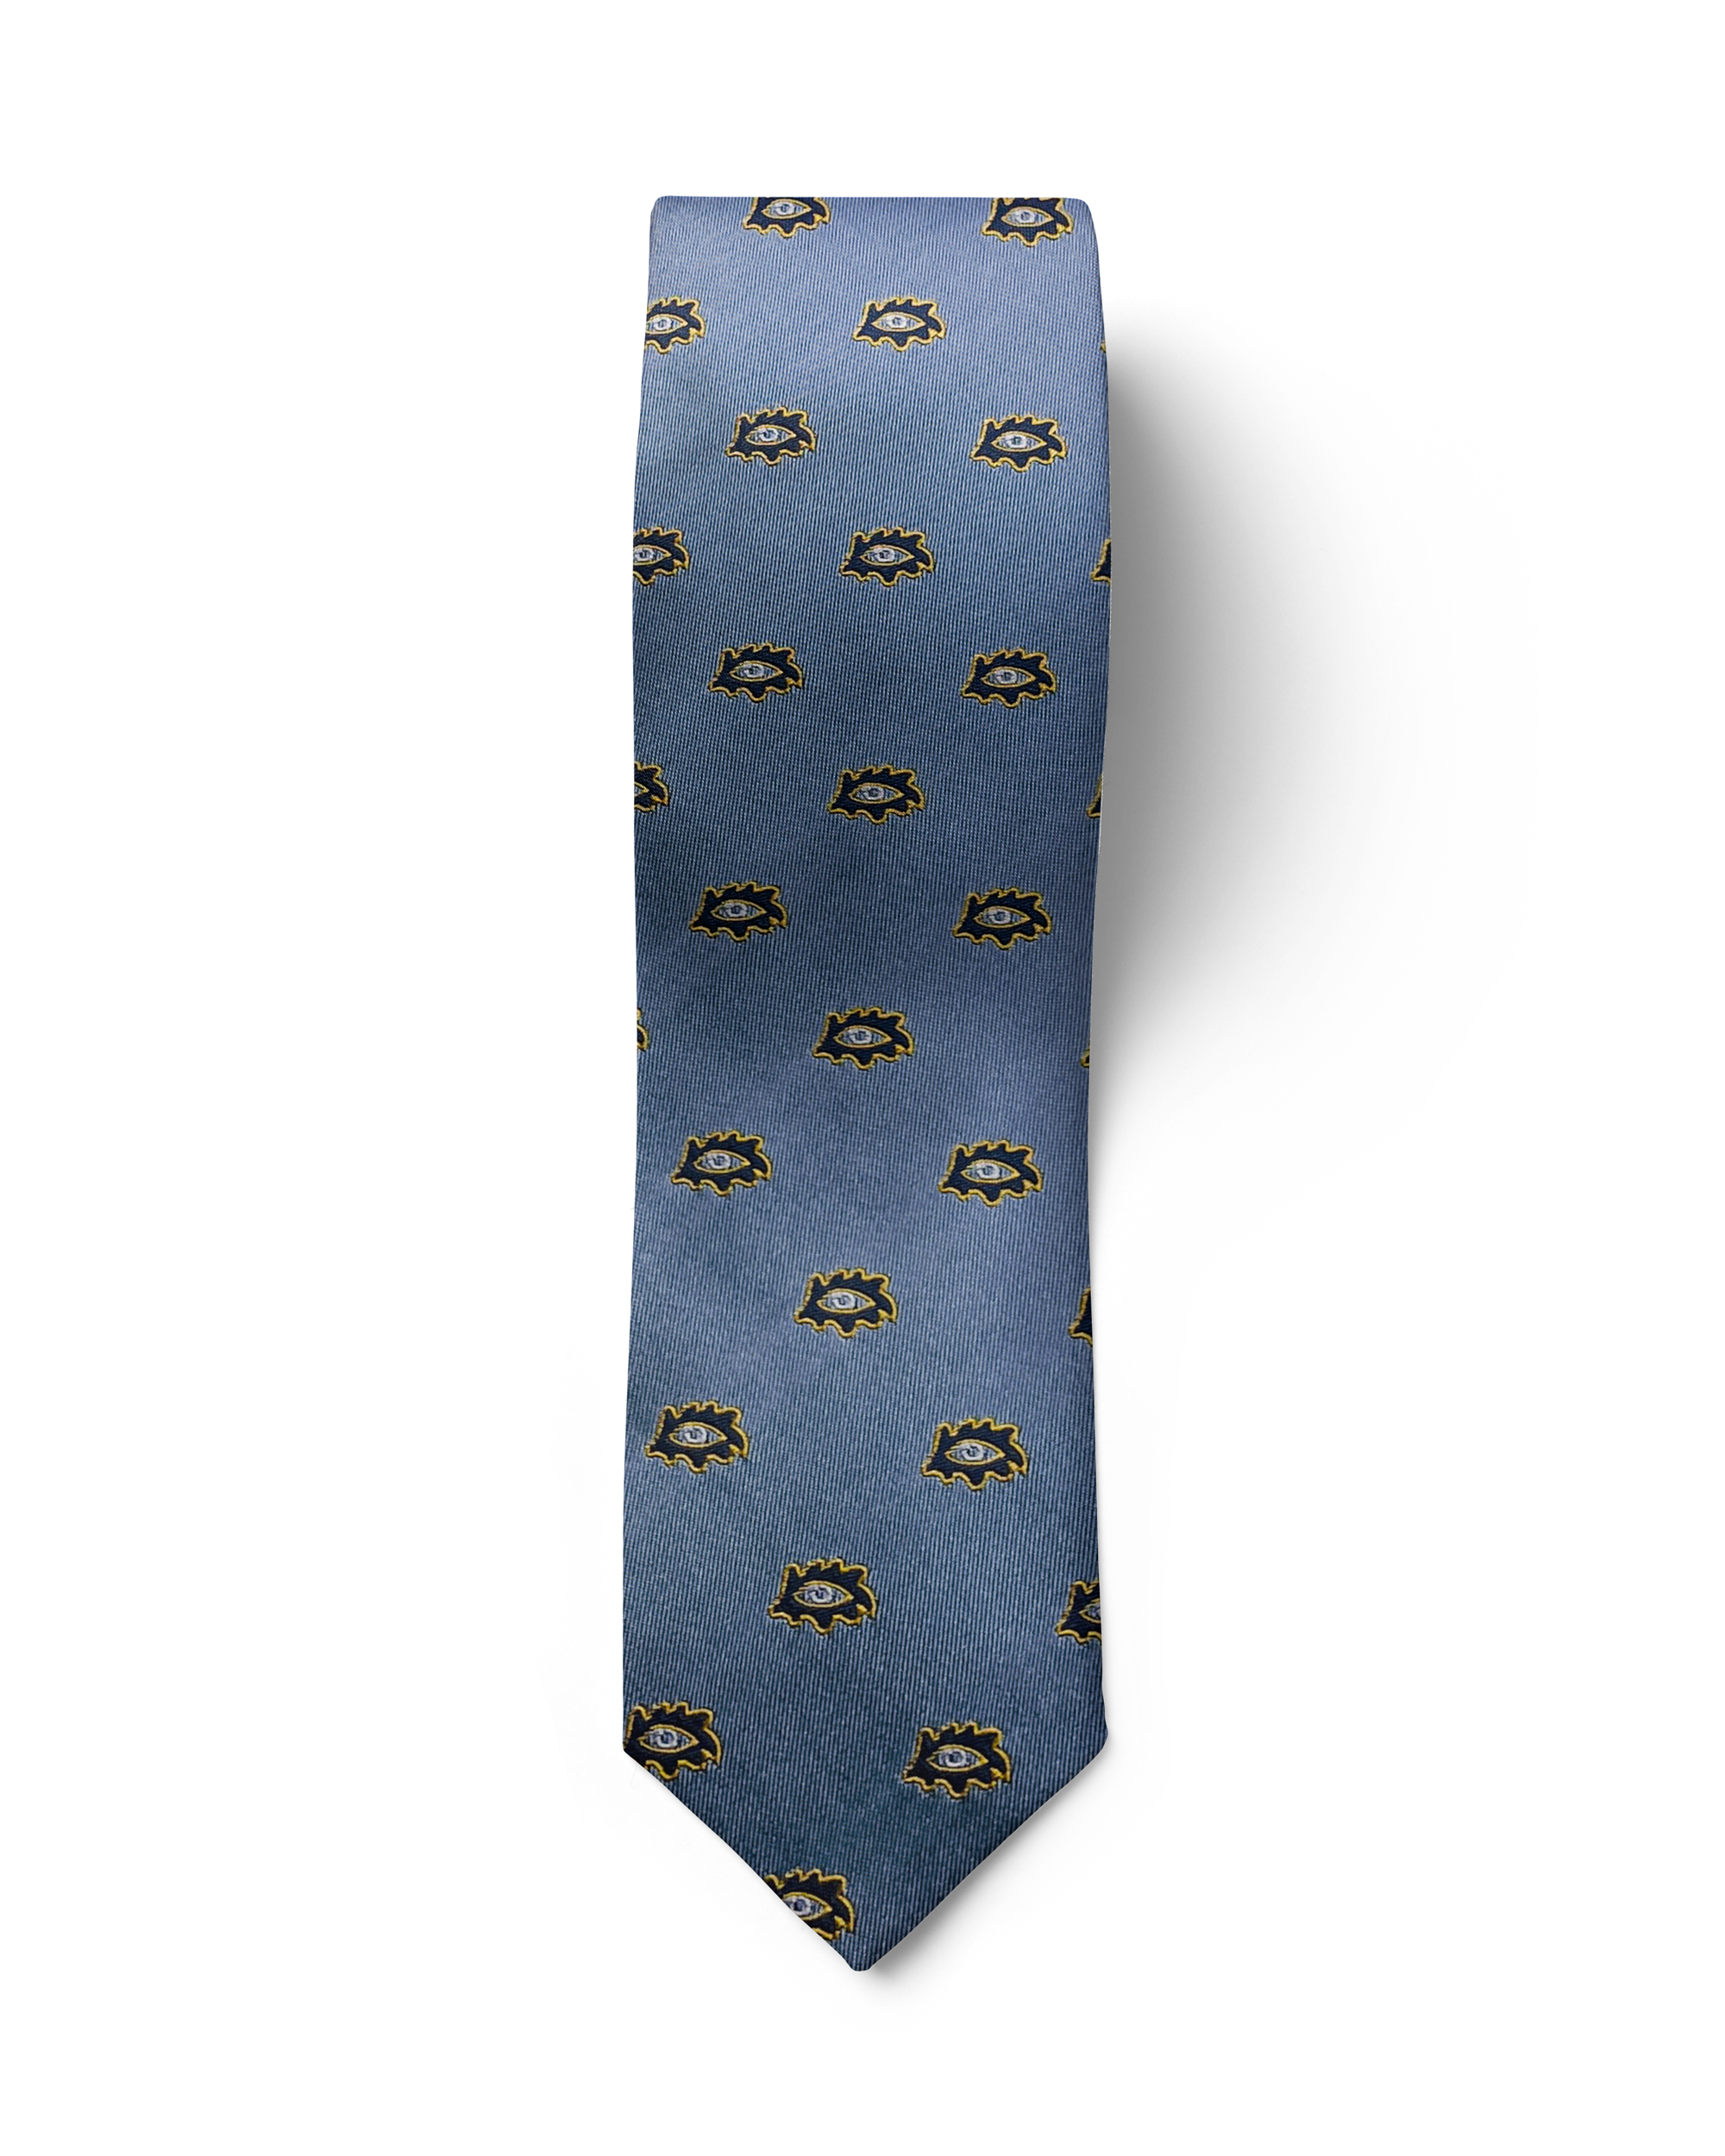 აბრეშუმიჟაკარდის ჰალსტუხის და საგულის სეტი „თოლიგე“ (ცისფერი)